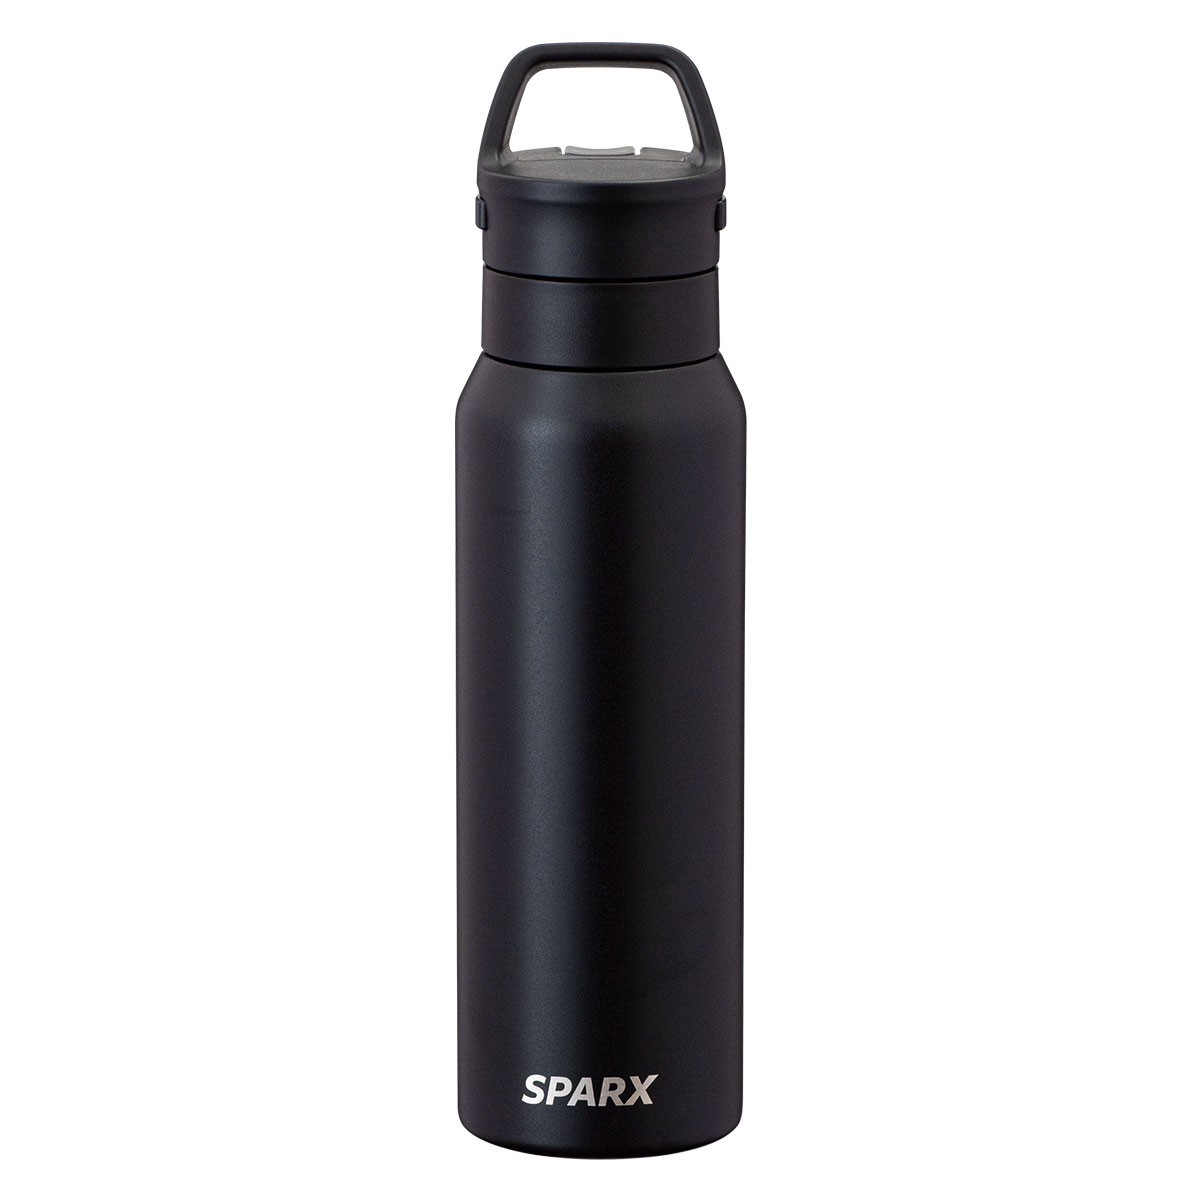 SPARX 真空断熱炭酸用ボトル 750ml ブラックのサムネイル